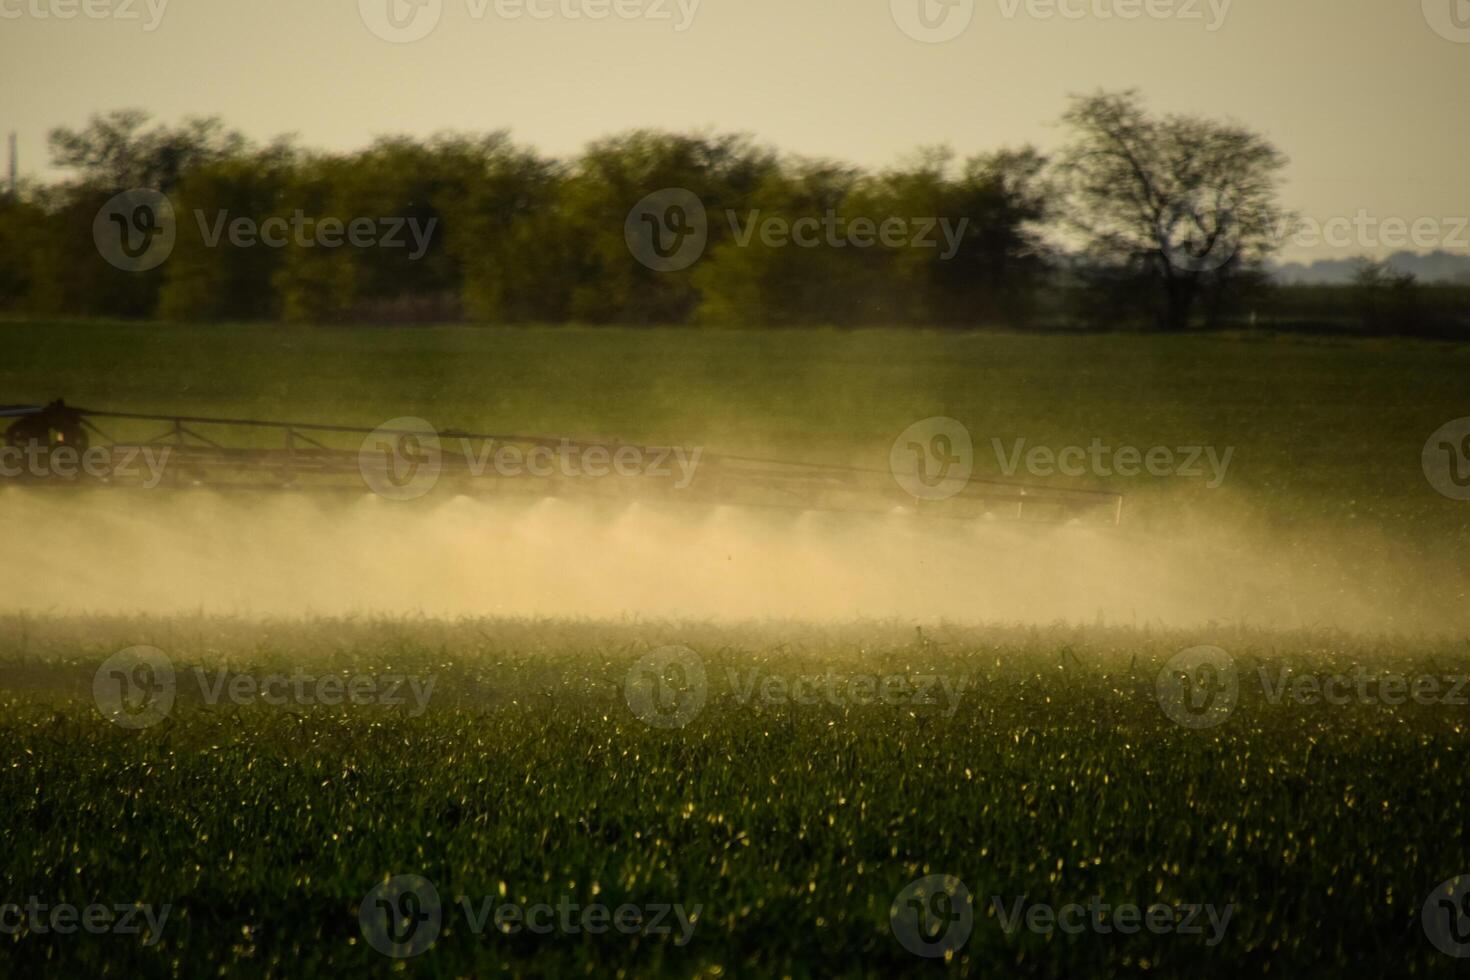 jets av flytande gödselmedel från de traktor spruta. foto